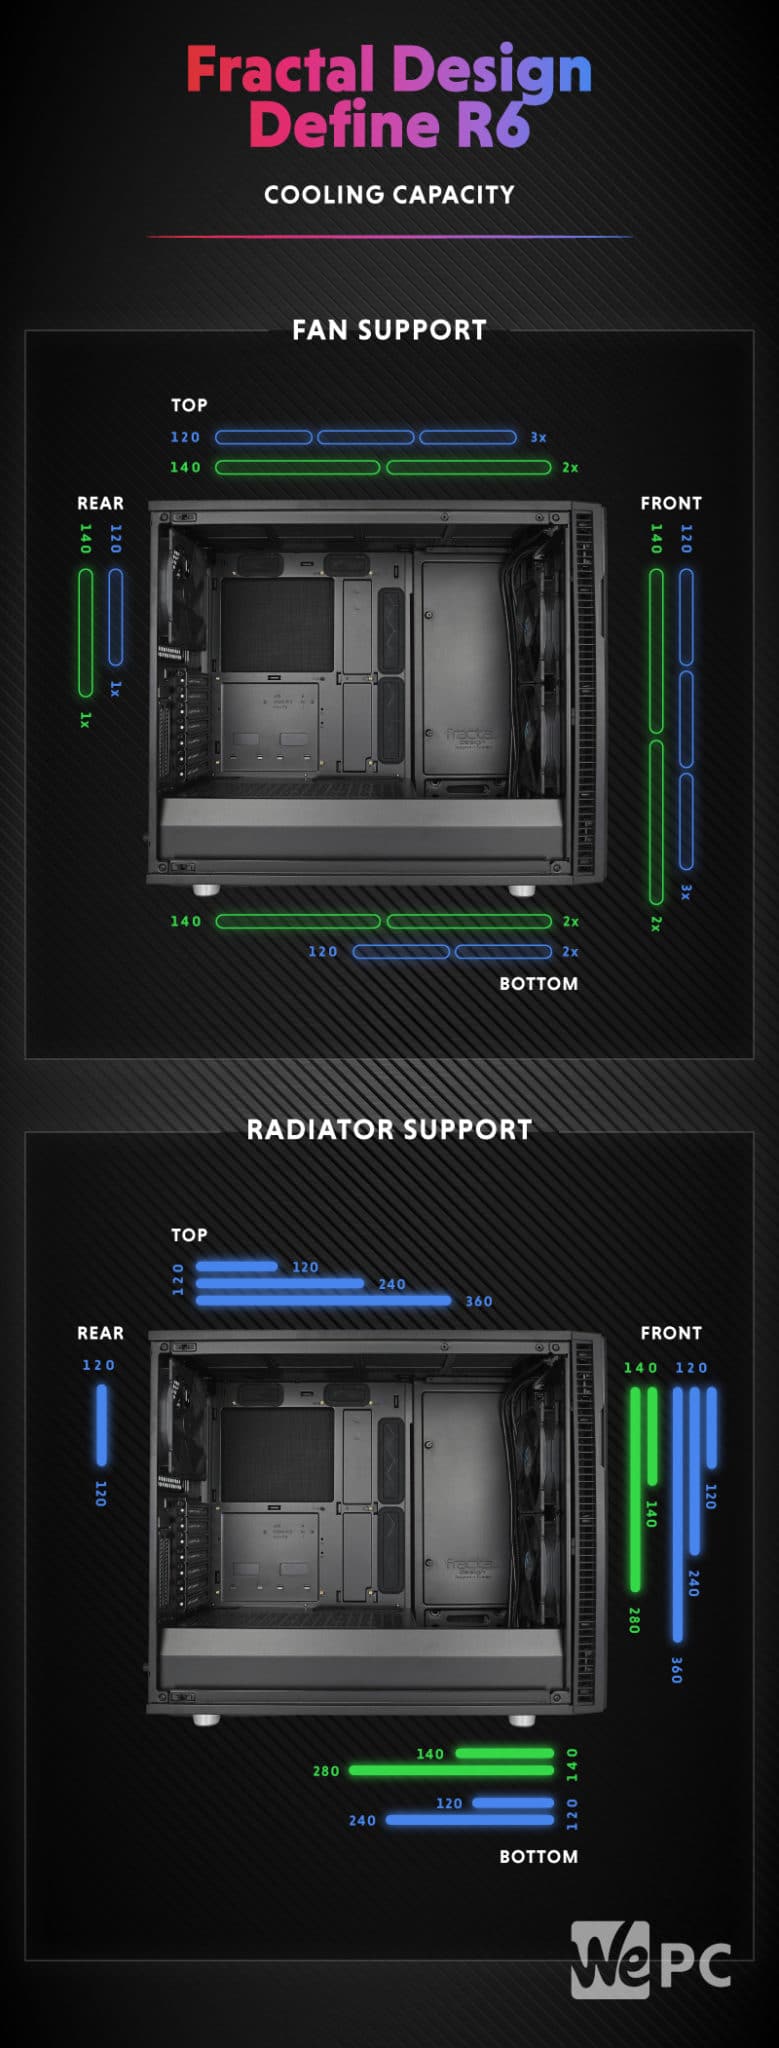 Fractal Design Define R6 Cooling Capacity